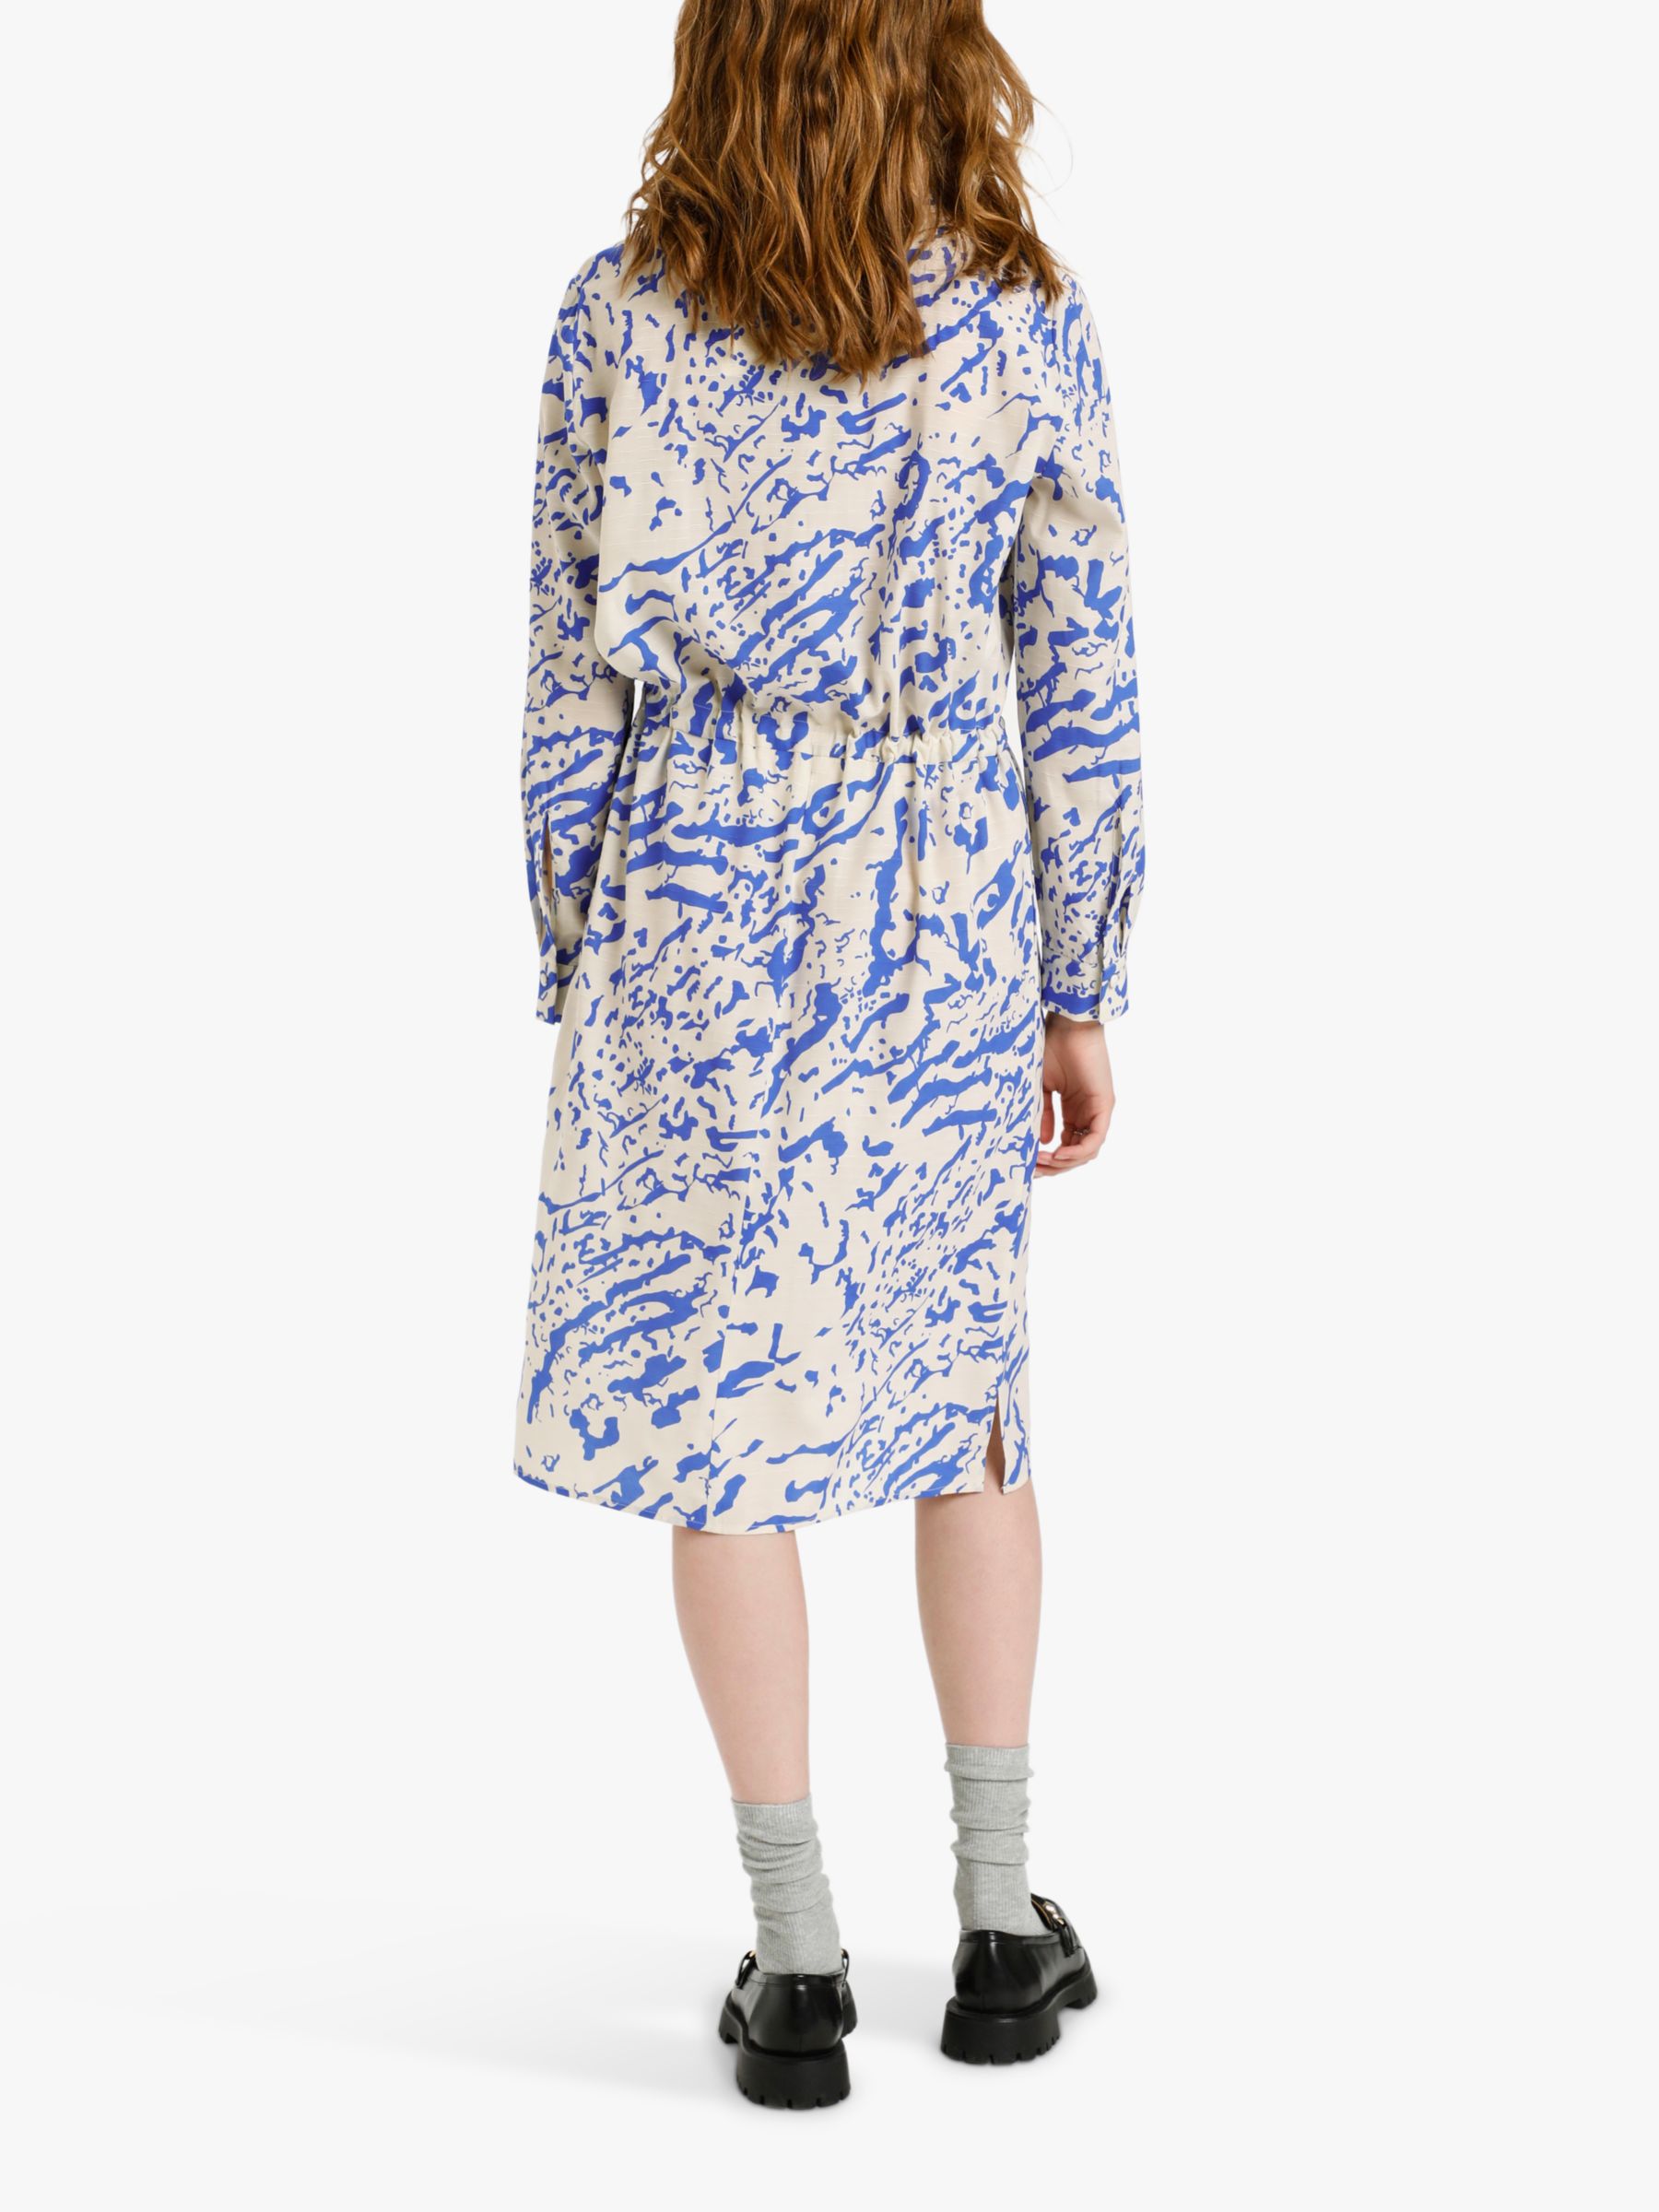 SIMONSEN Abby Abstract Print Dress, Blue 8